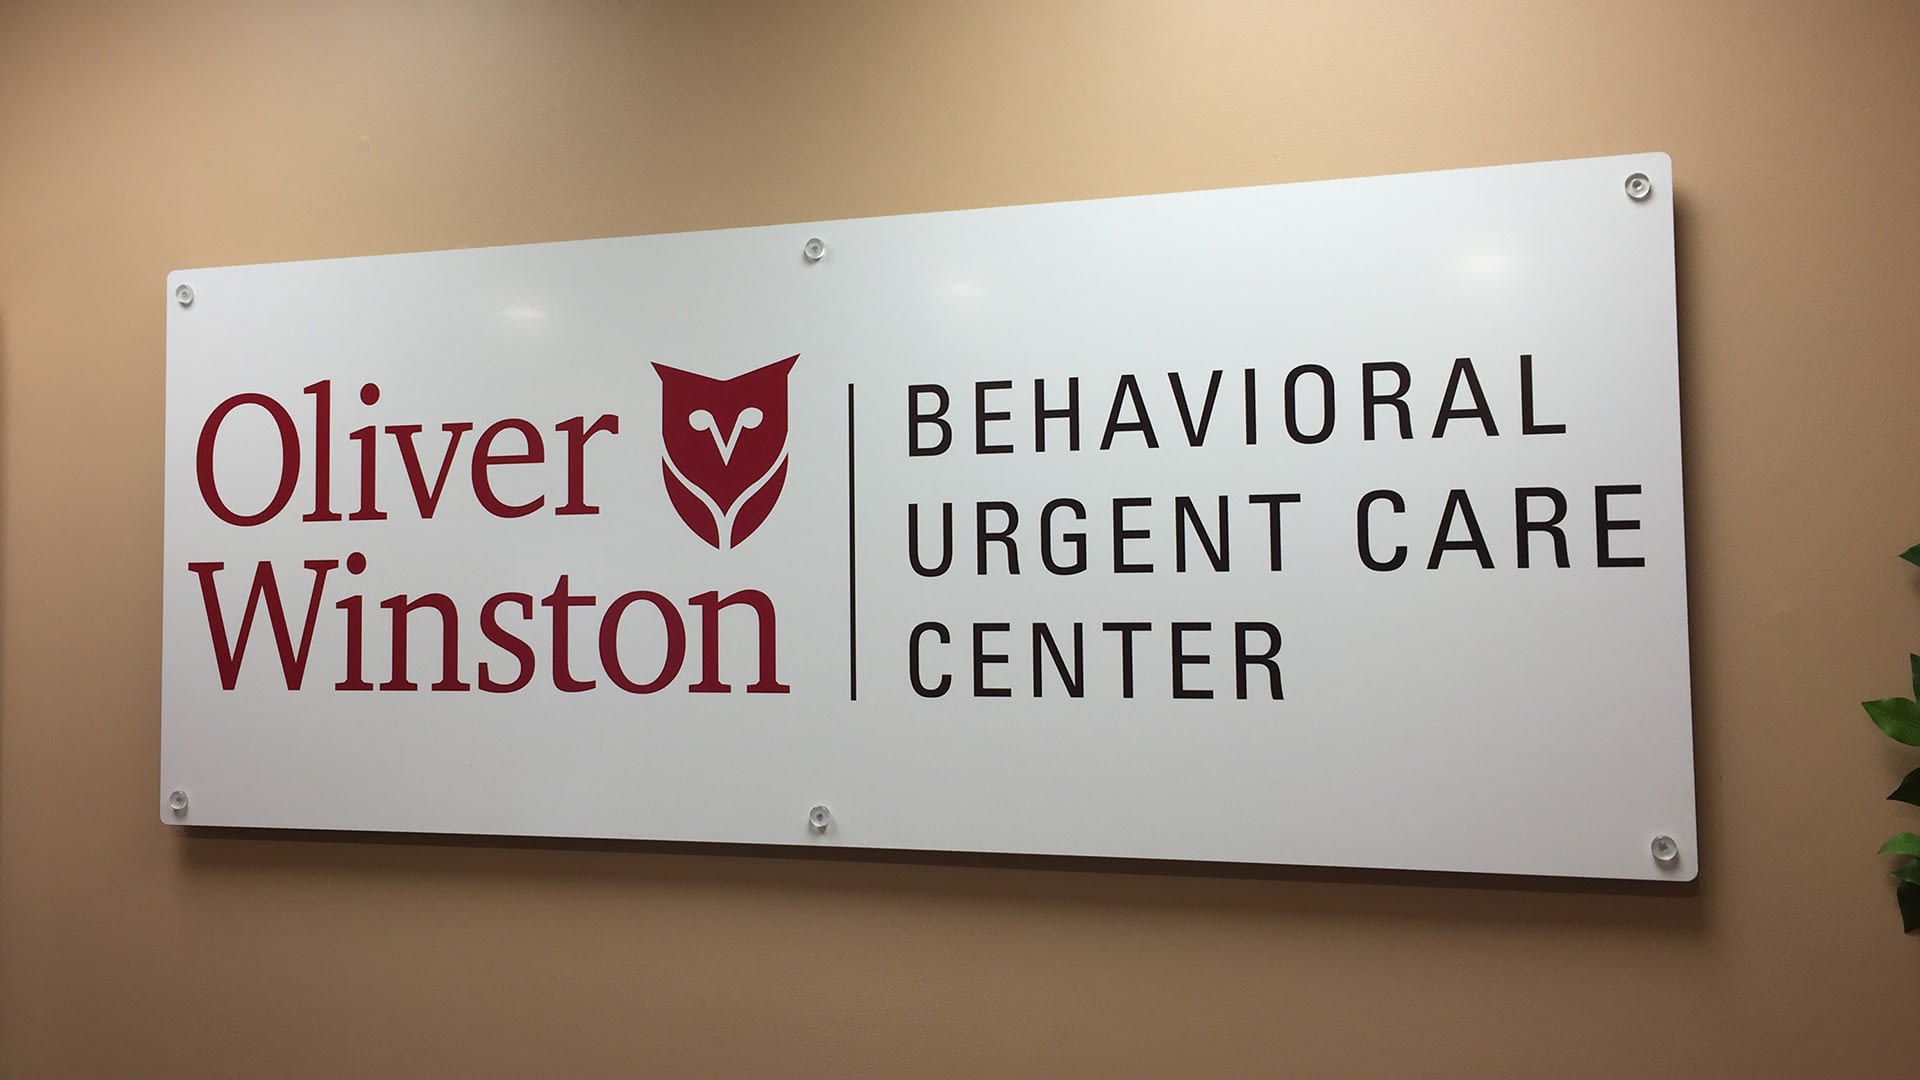 Oliver Winston Behavioral urgent care center door sign